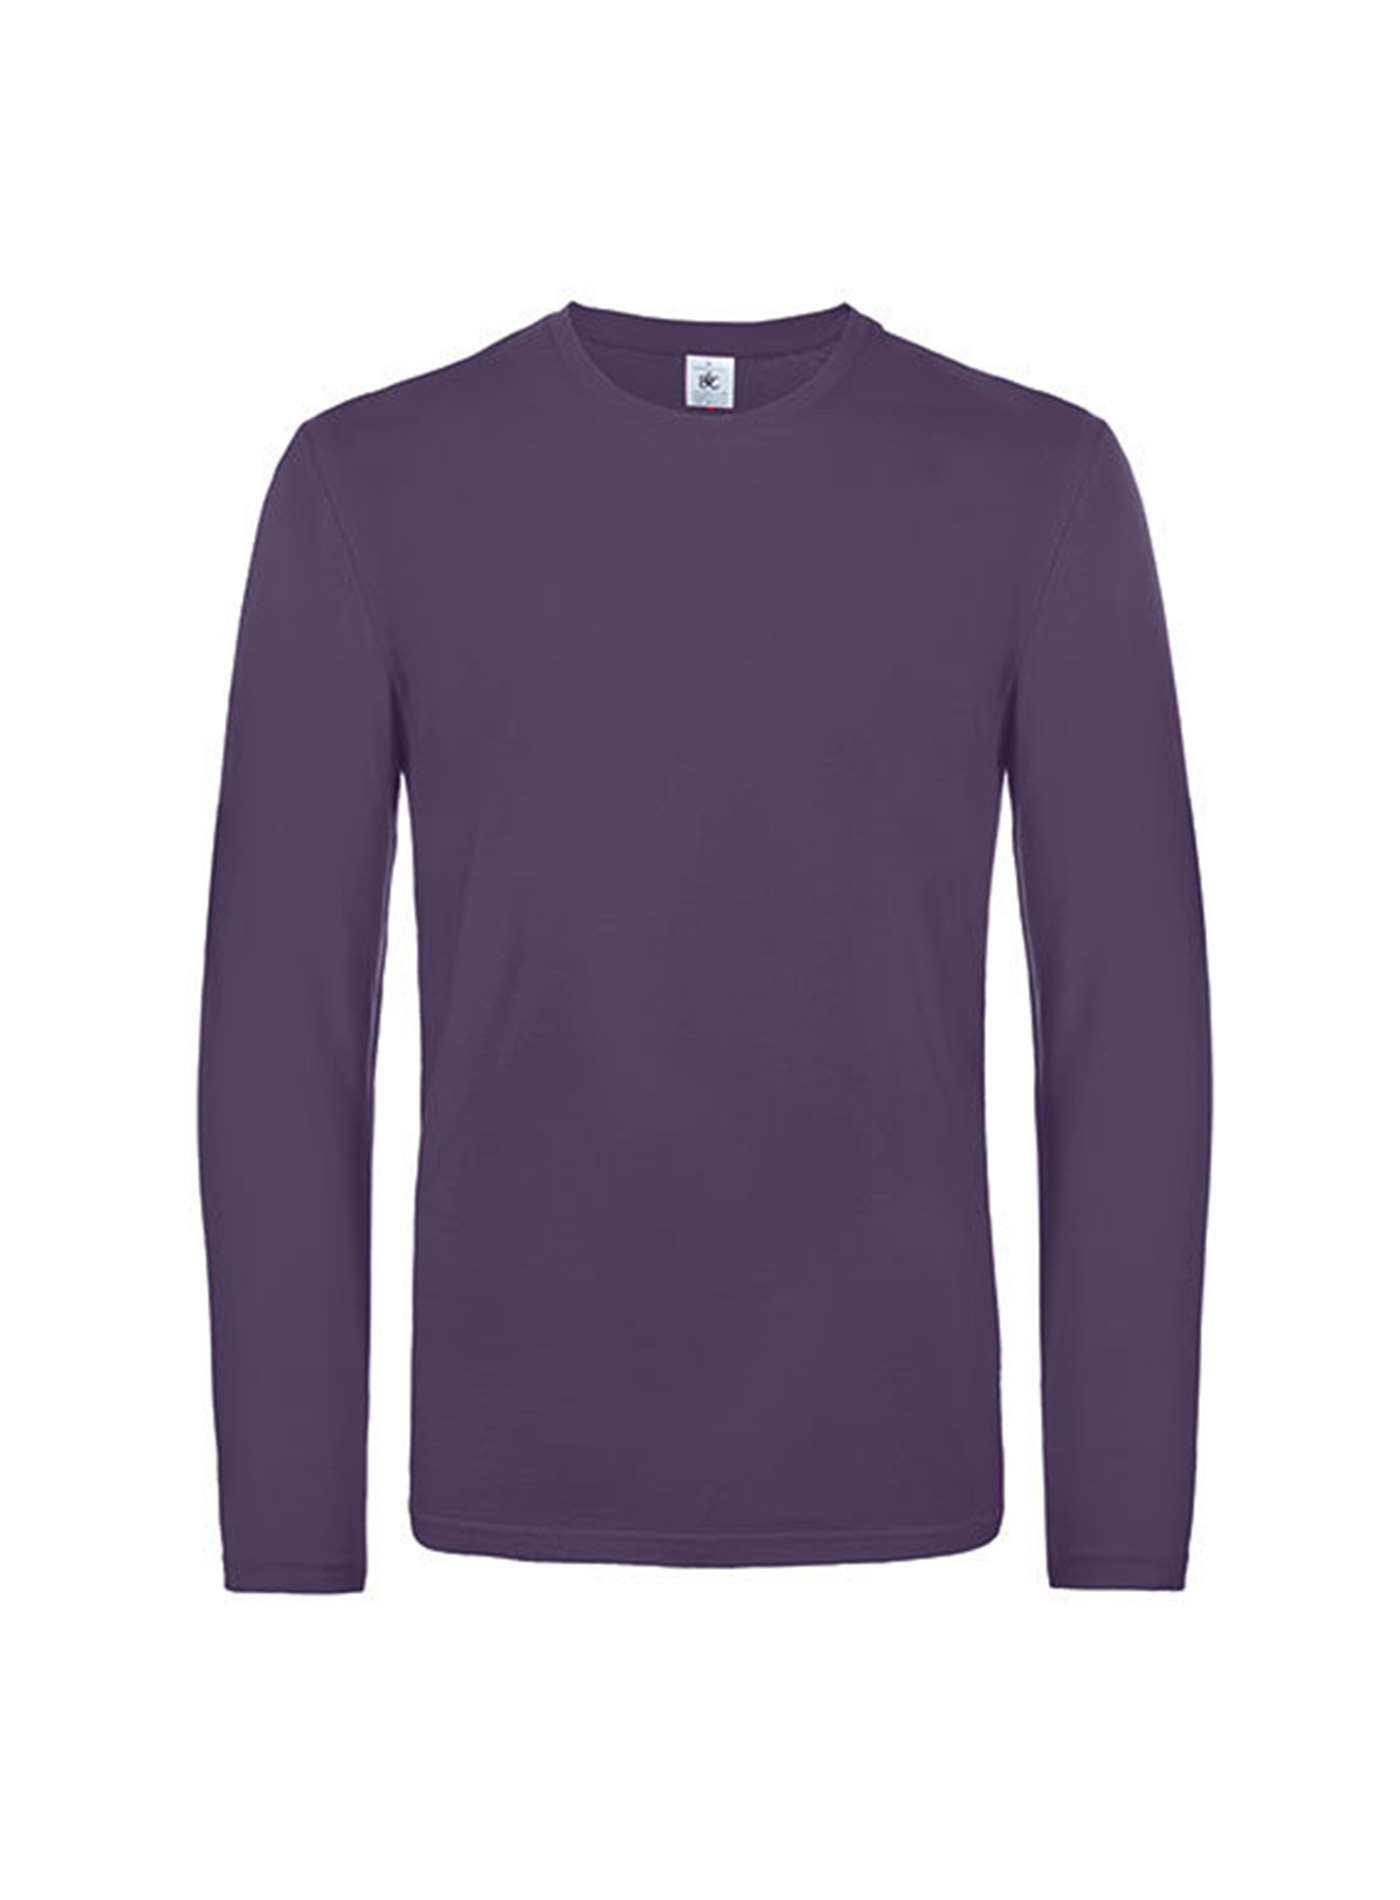 Pánské tričko s dlouhým rukávem B&C Collection - Tmavě fialová XL